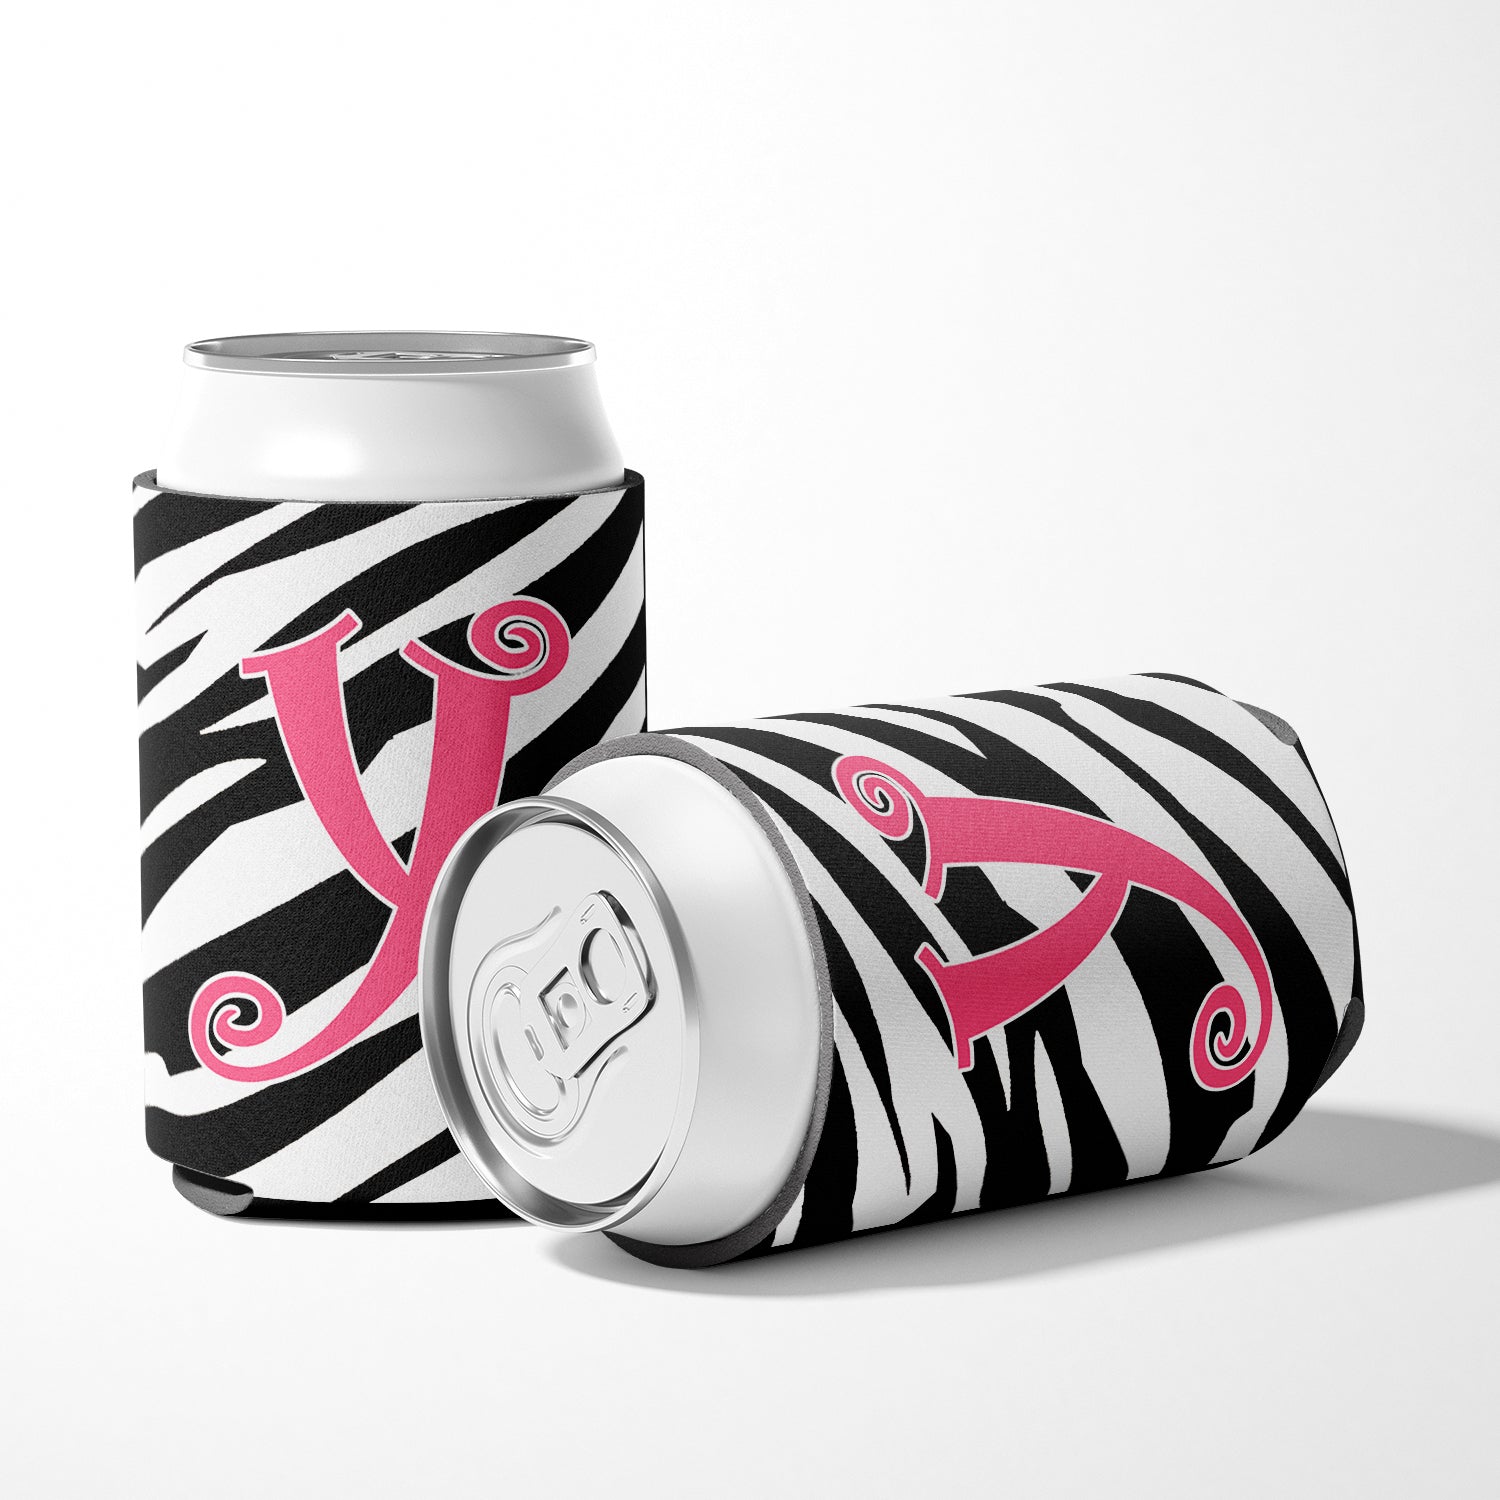 Letter Y Initial Monogram - Zebra Stripe and Pink Can or Bottle Beverage Insulator Hugger